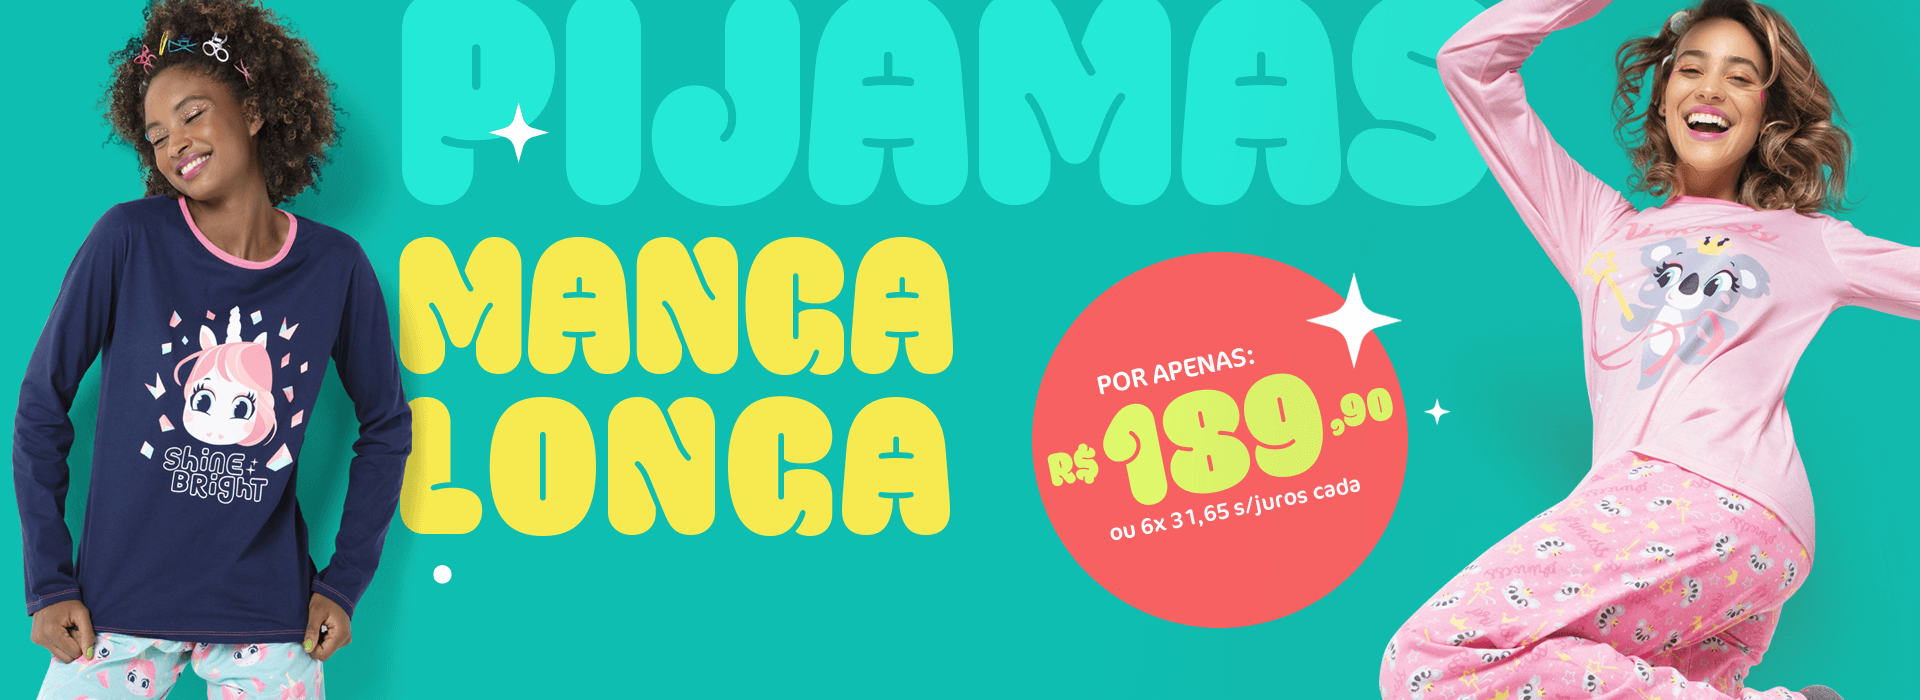 Banner E: Pijama Manga Longa a partir de 189,90